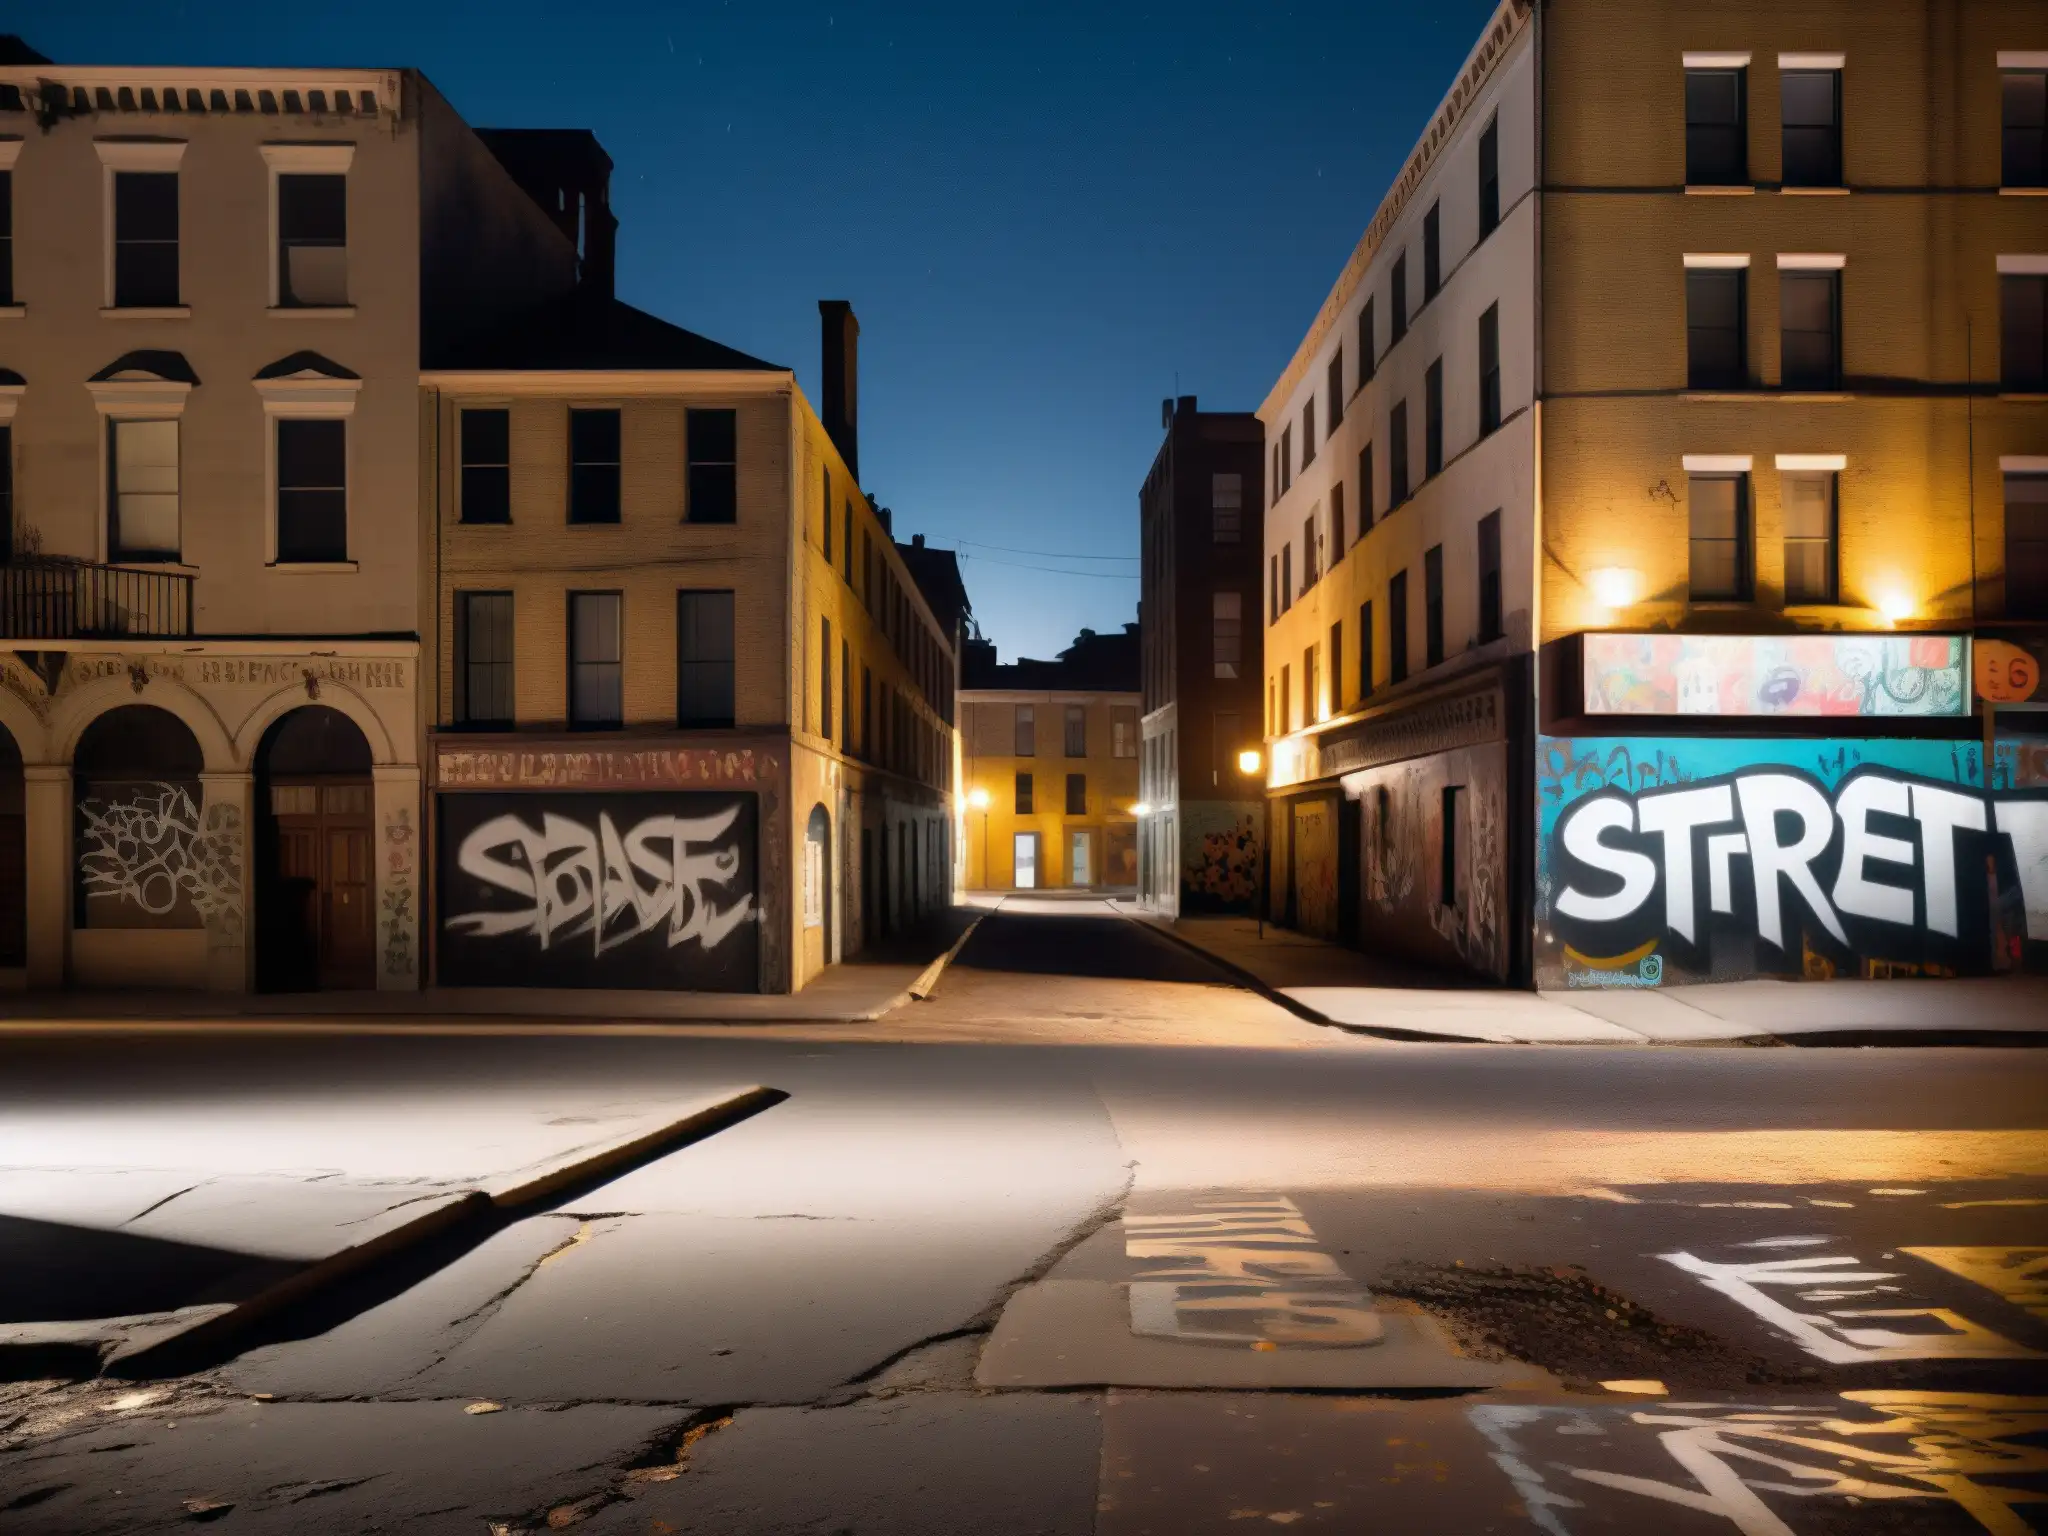 Una misteriosa calle nocturna, con sombras y atmósfera inquietante